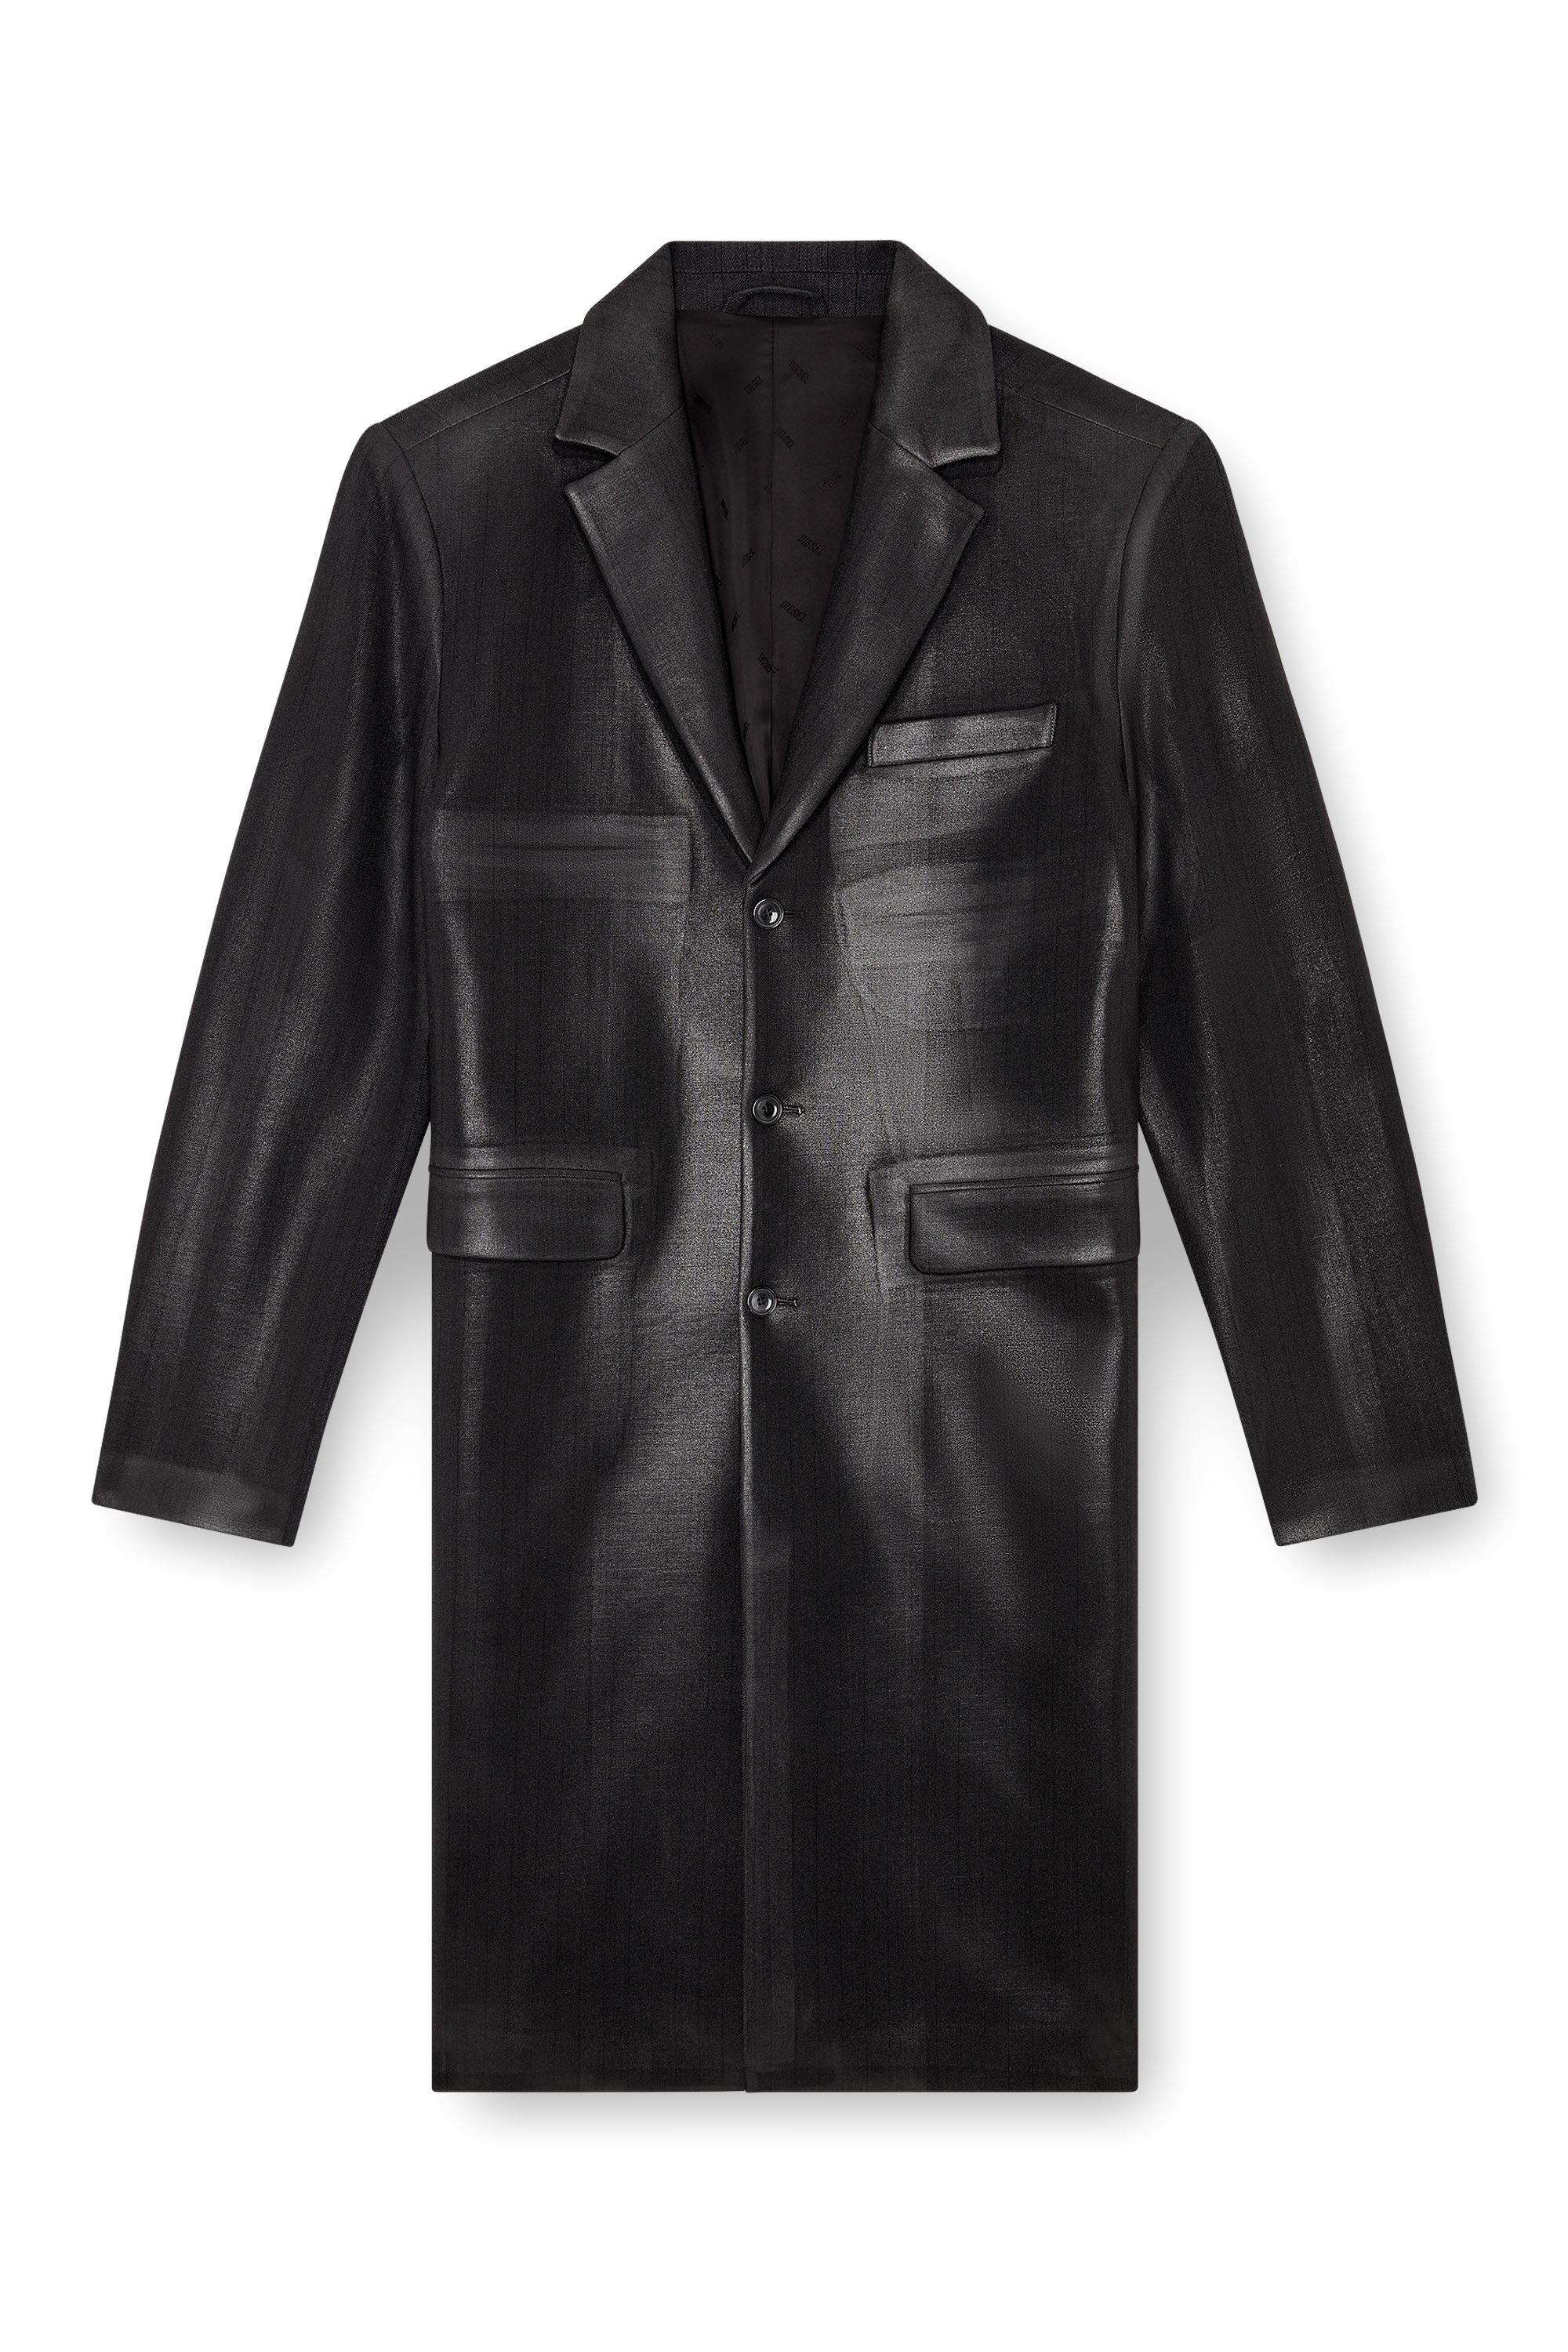 Diesel - J-DENNER, Man Coat in pinstriped cool wool in Black - Image 5